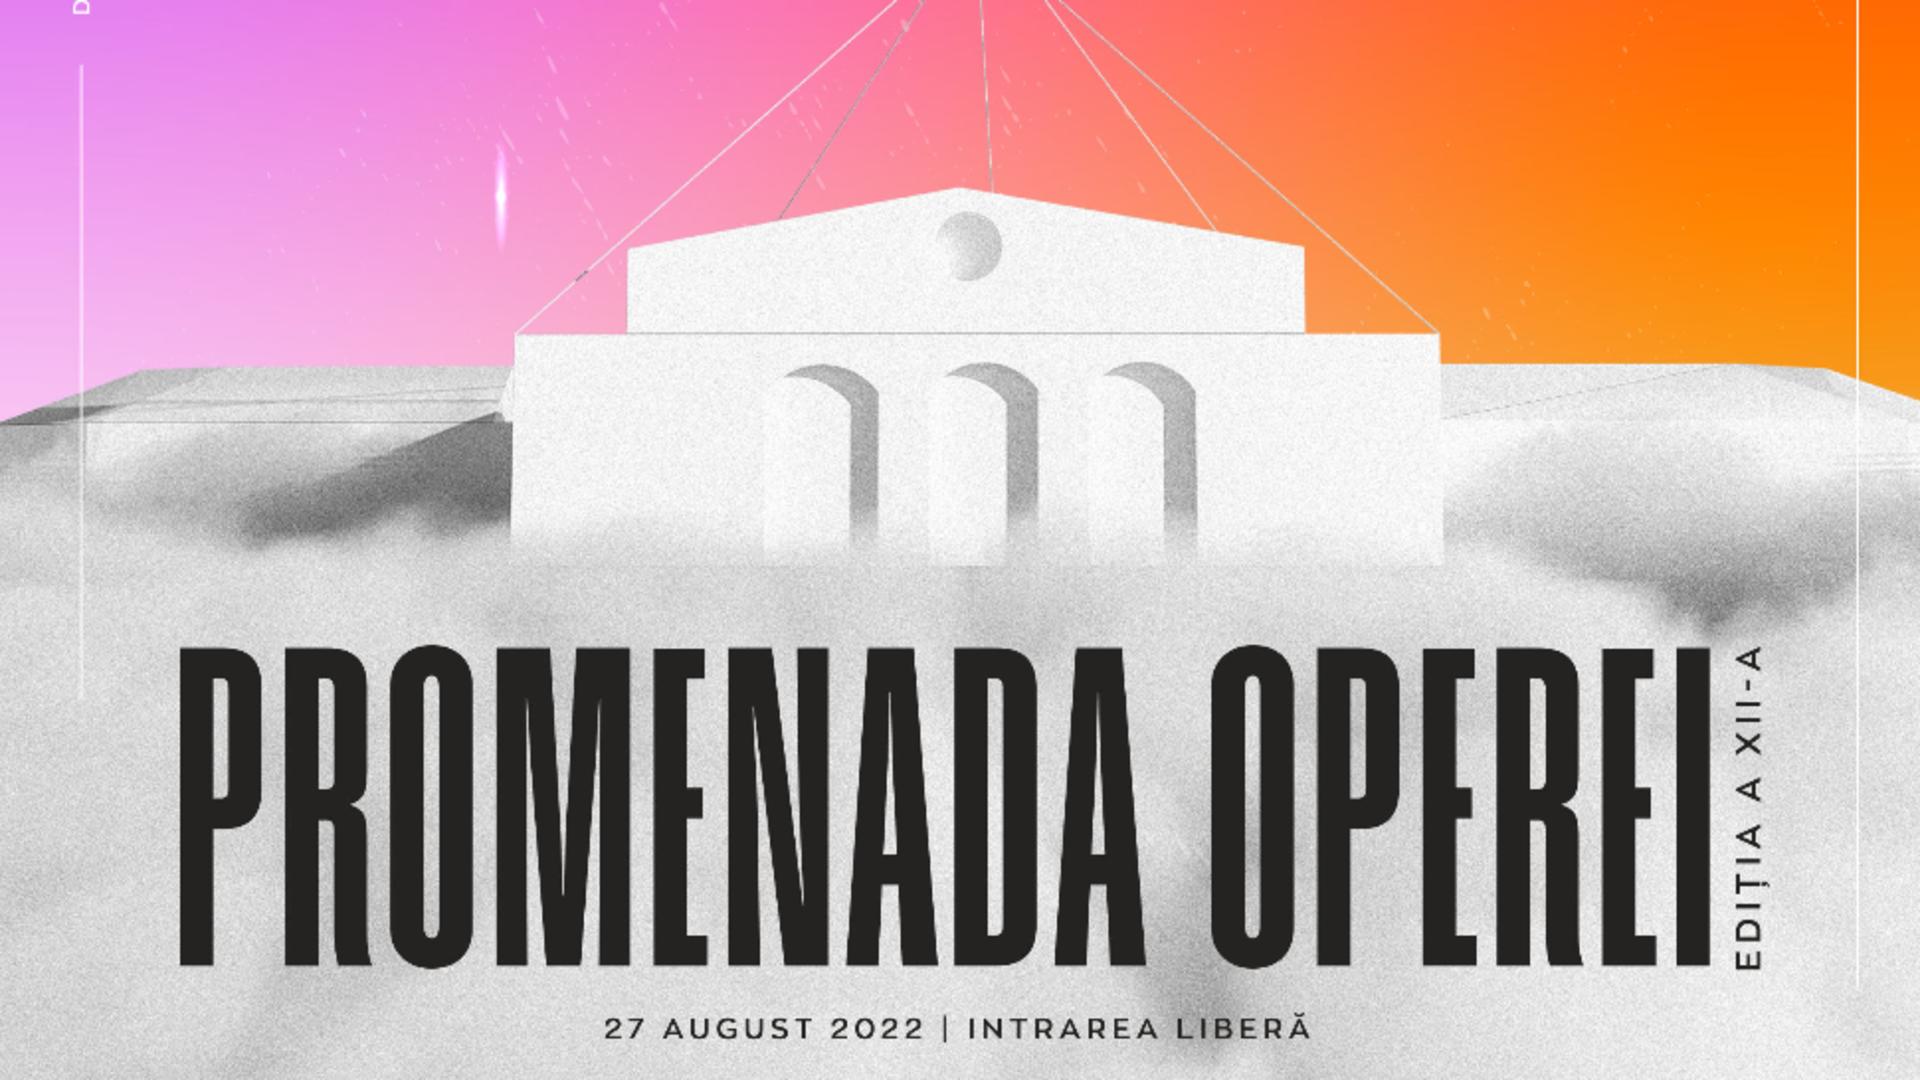 Opera Națională București intră în al doilea secol de existență - Promenada Operei, în 27 august 